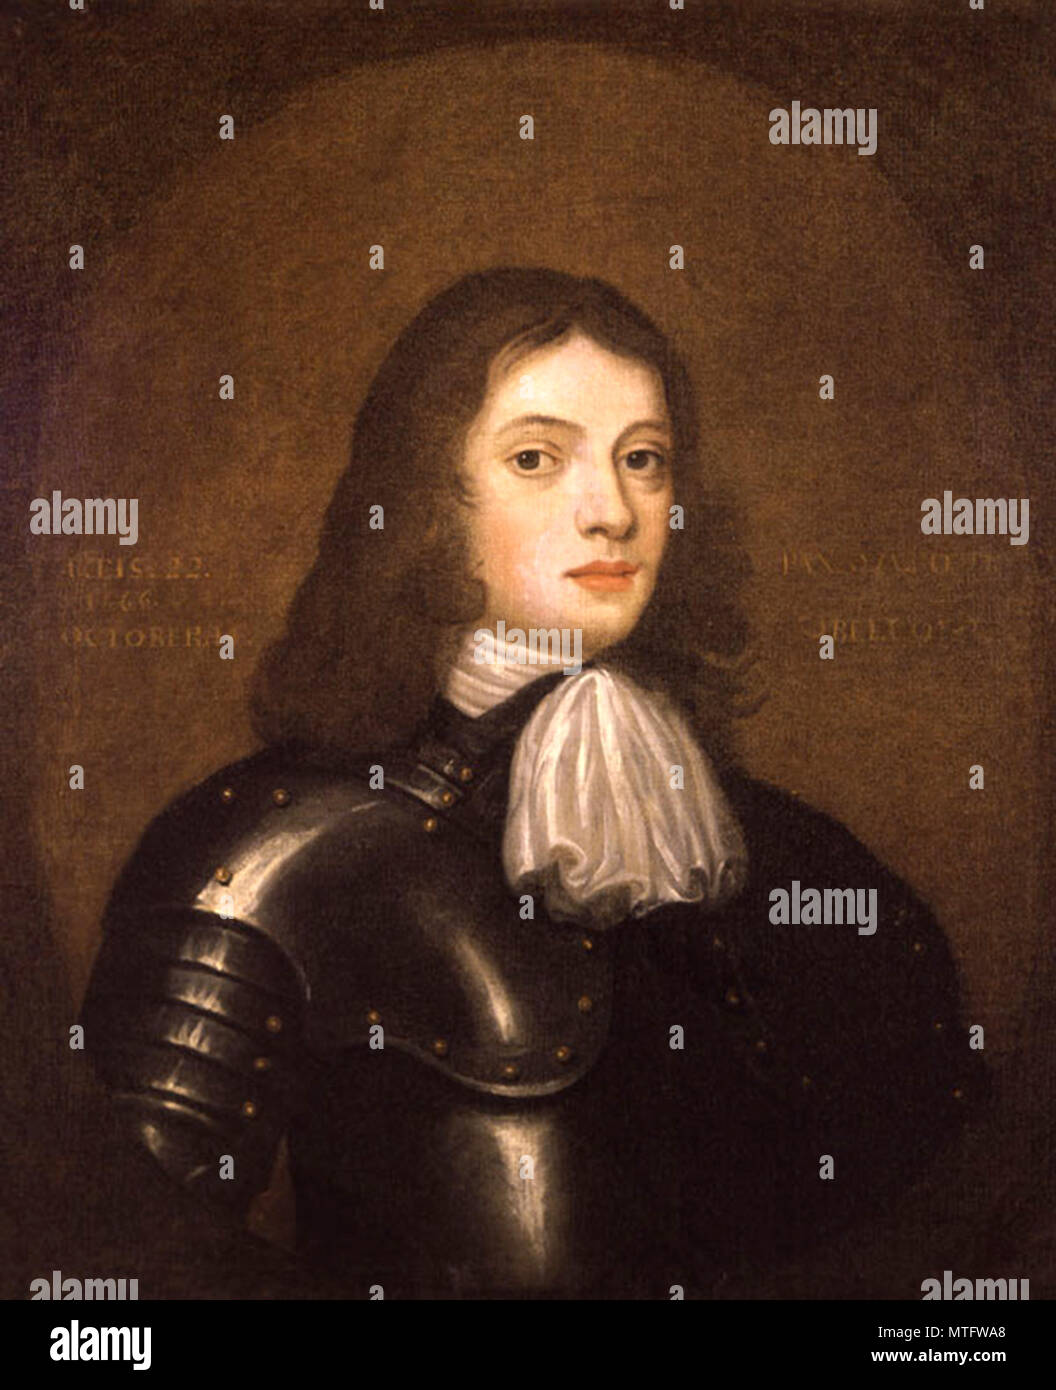 William Penn (1644 - 1718) fils de Sir William Penn, French entrepreneur immobilier, philosophe, début de Quaker, et fondateur de la colonie d'Amérique du Nord la Province de Pennsylvanie Banque D'Images